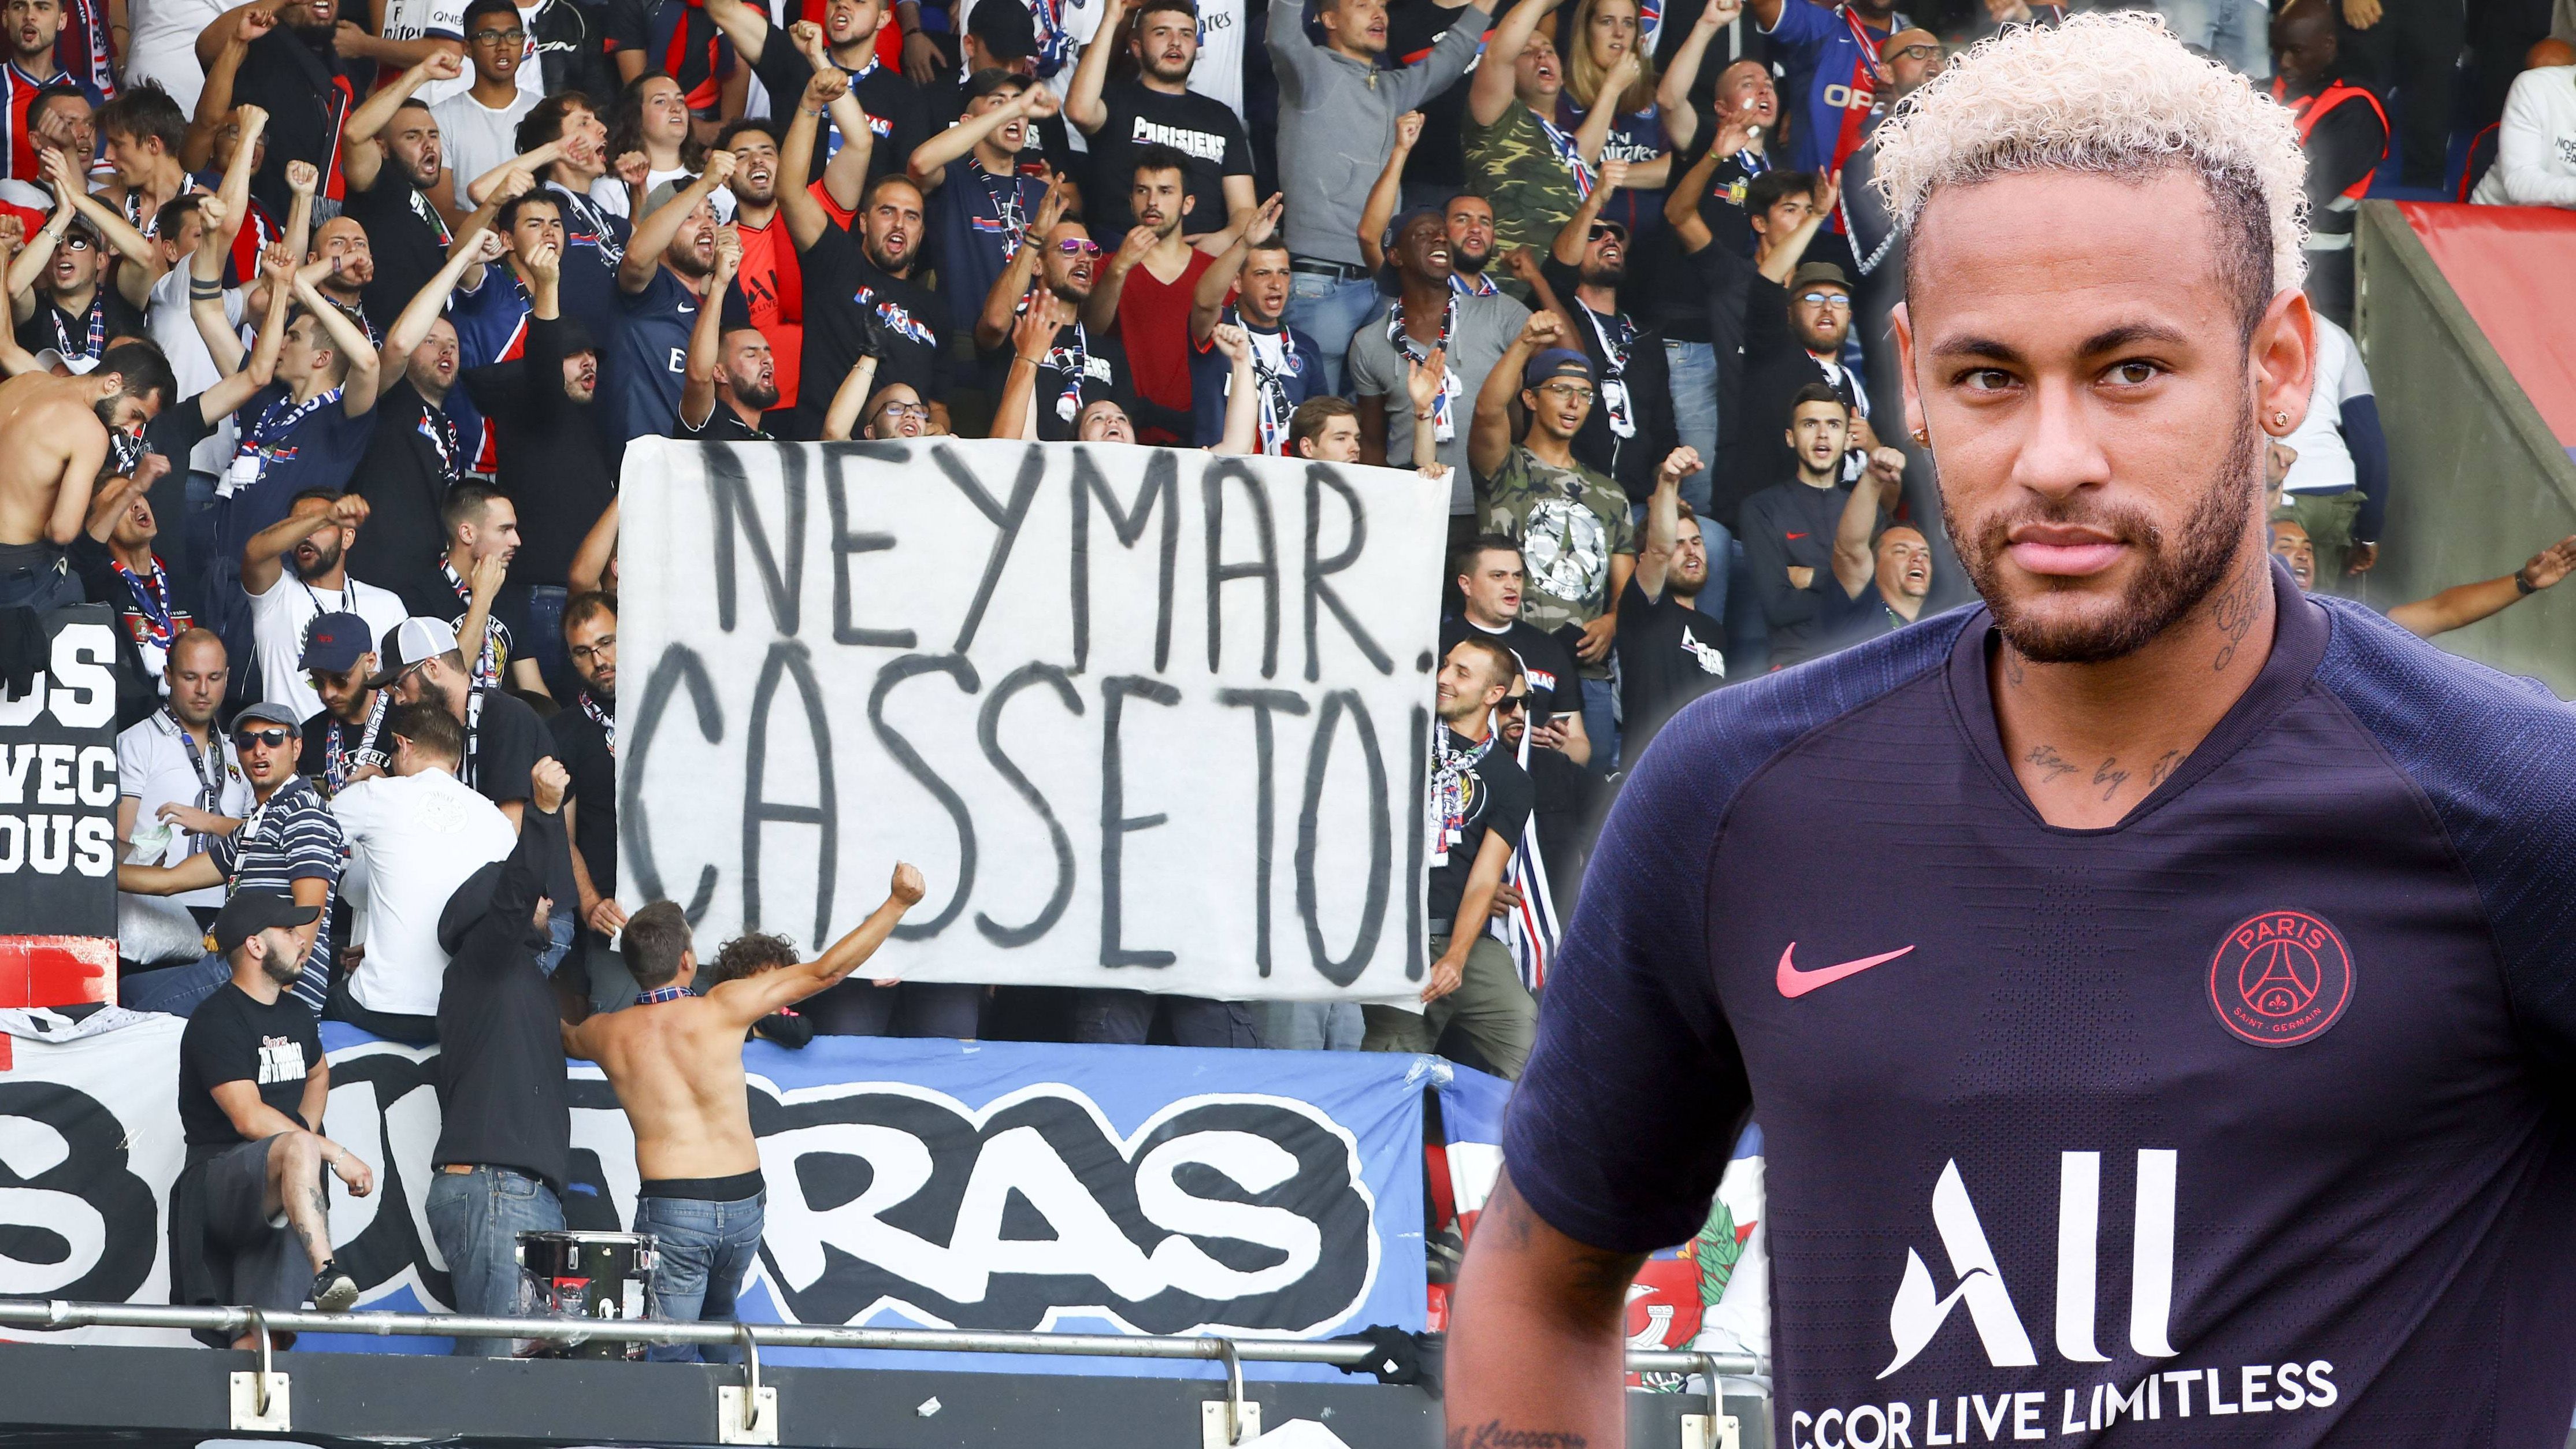 
                <strong>PSG-Ultras beschimpfen Neymar</strong><br>
                Dass Neymar Paris St. Germain offenbar so schnell wie möglich verlassen möchte, kommt bei den Fans des französischen Meisters überhaupt nicht gut an. Beim Saisonauftakt gegen Nimes machten die Ultras ihrem Ärger in aller Deutlichkeit Luft. "Neymar, verpiss dich", stand auf einem Plakat. Außerdem beschimpften sie den 27-Jährigen während des Spiels mit Sprechchören als "Hurensohn". Die Fans scheinen mit dem Kapitel "Neymar" bereits abgeschlossen zu haben. Doch noch ist ein Wechsel nicht fix. Spanischen Medienberichten zufolge soll Real Madrid die besten Karten auf eine Verpflichtung haben. Allerdings müssten "Los Blancos" erst Gareth Bale, James Rodriguez und Mariano loswerden, um Neymar finanzieren zu können. Laut "Marca" beläuft sich die Ablöse auf 205 Millionen Euro. 
              